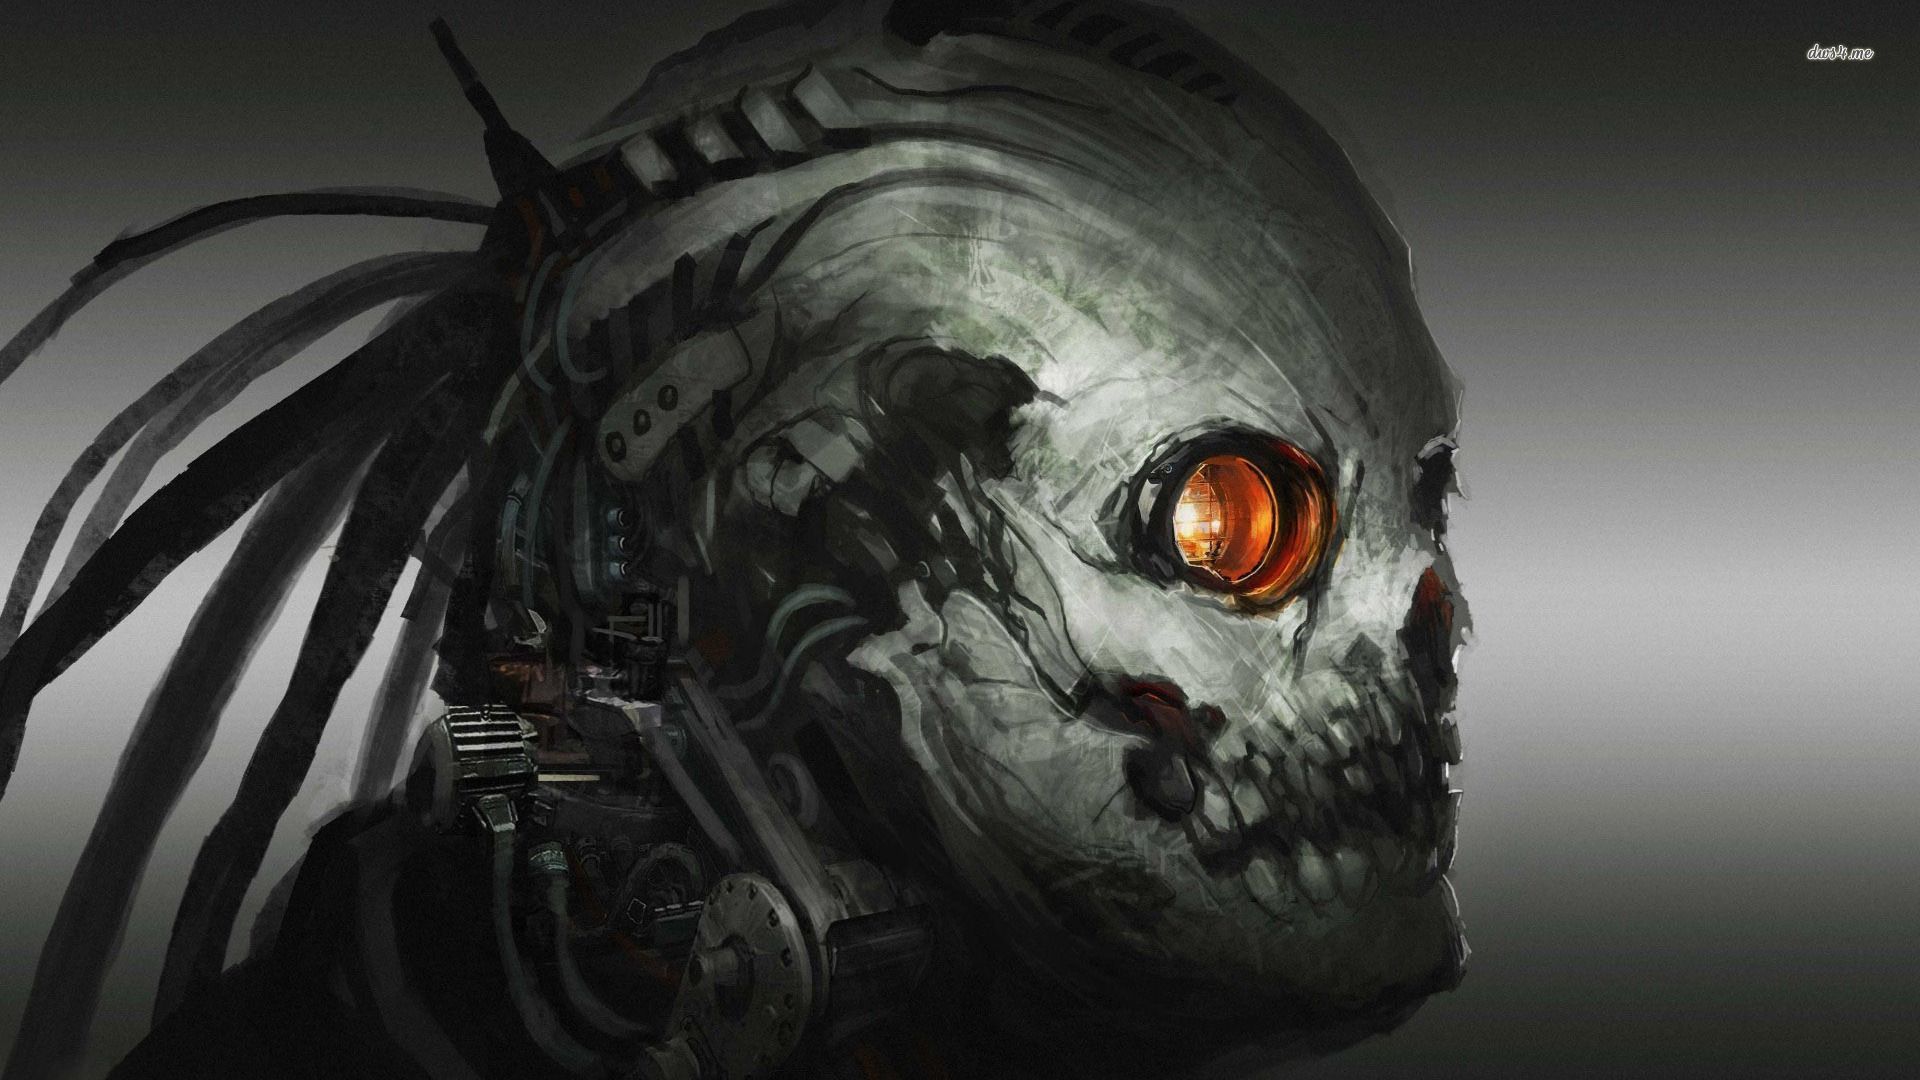 Cyborg skull wallpaper - Digital Art wallpapers - #16133